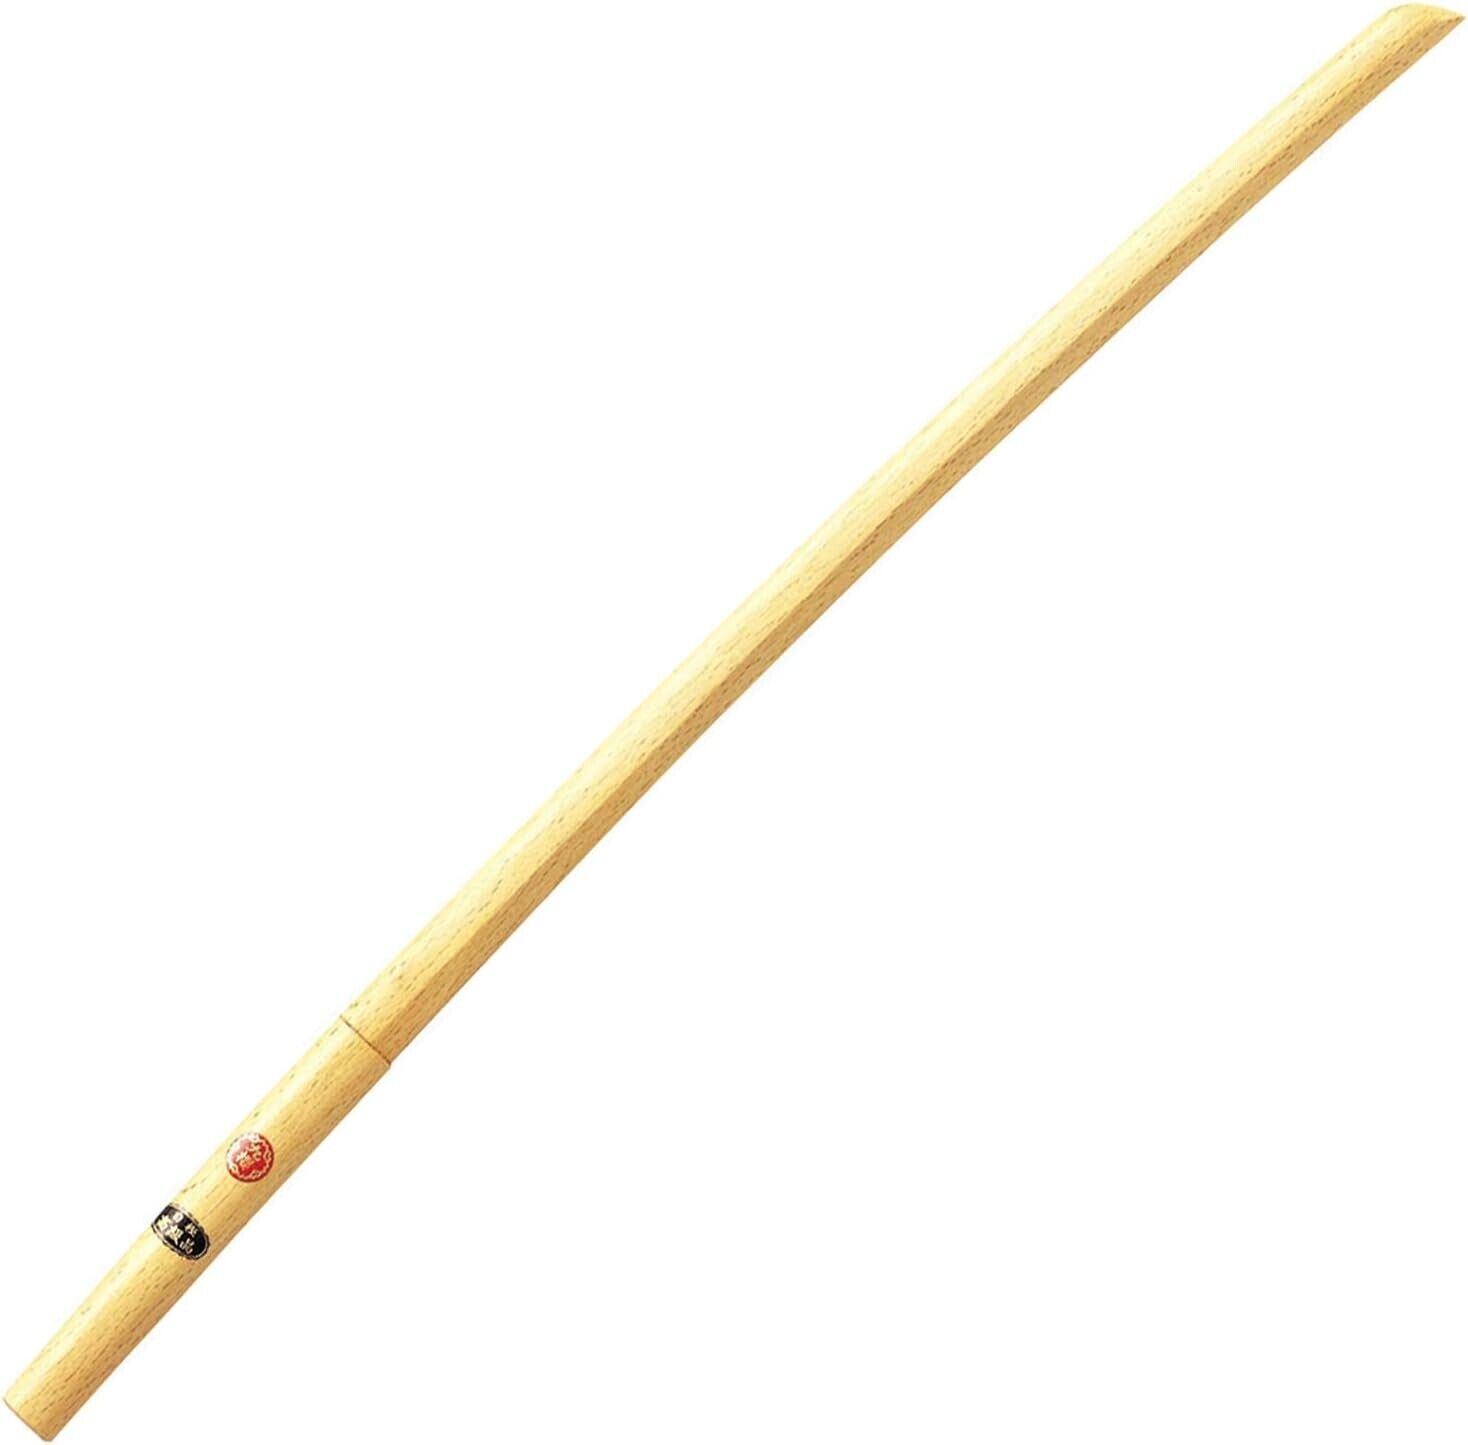 Japanese Wooden Sword - 1015mm / 40in  White Oak Bokken Bokutou Samurai New